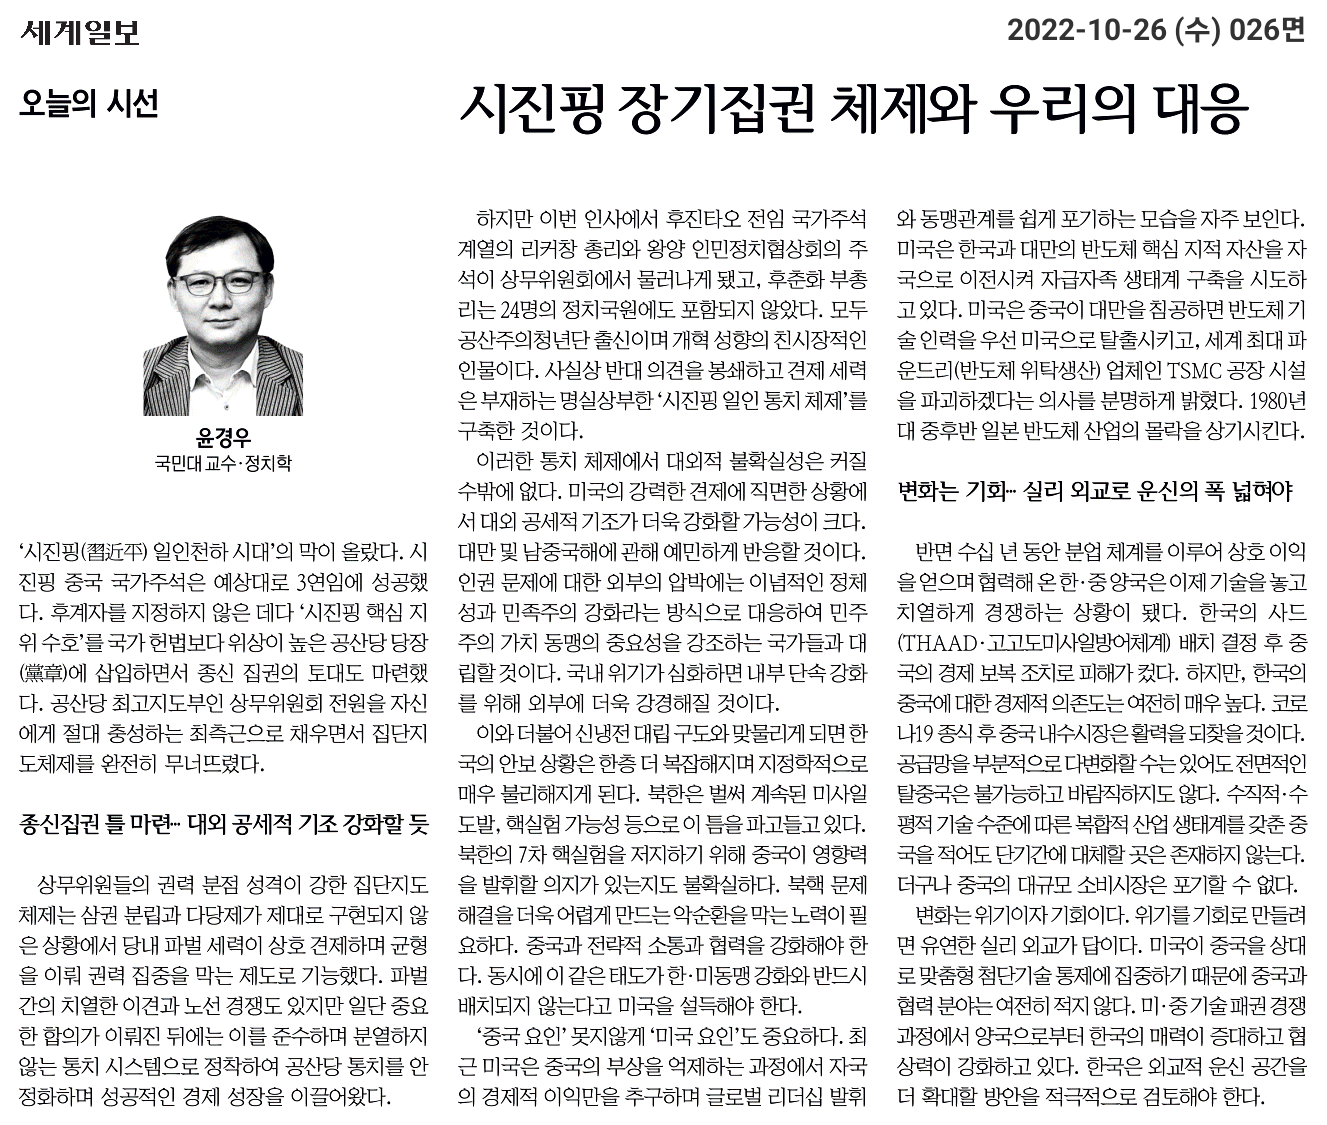 221026_세계일보-시진핑 장기집권 체제와 우리의 대응.png